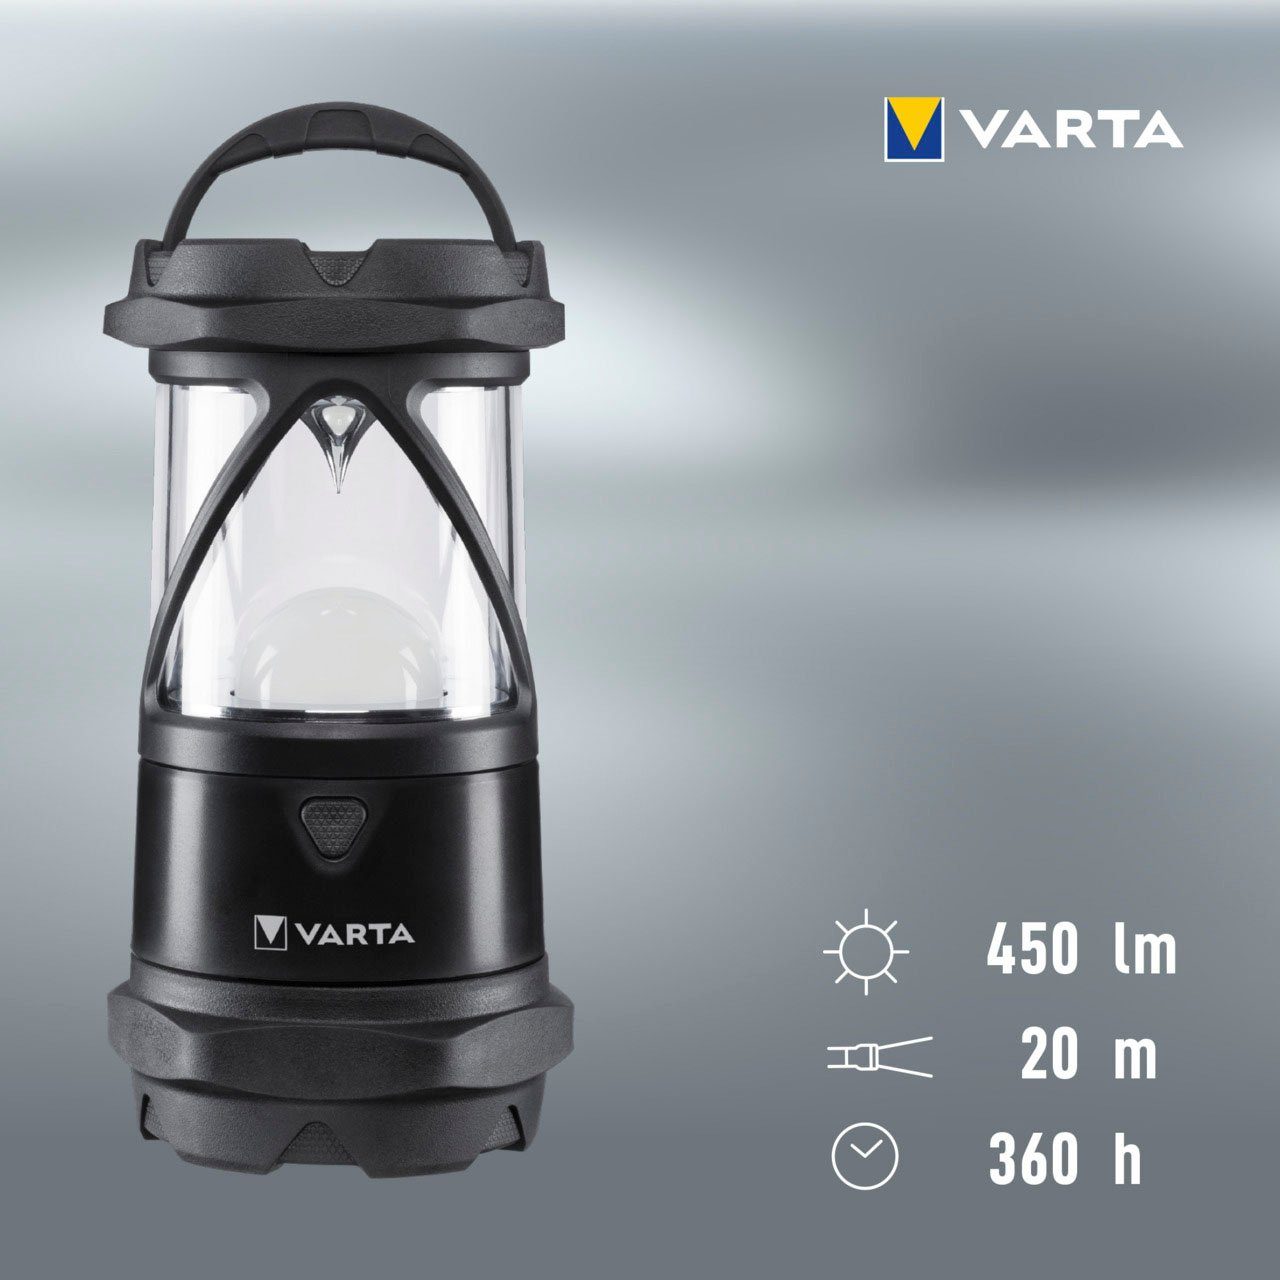 VARTA Laterne Indestructible L30 Pro und staubdicht,stoßabsorbierend,bruchfeste COB LED, Reflektor wasser- Linse und